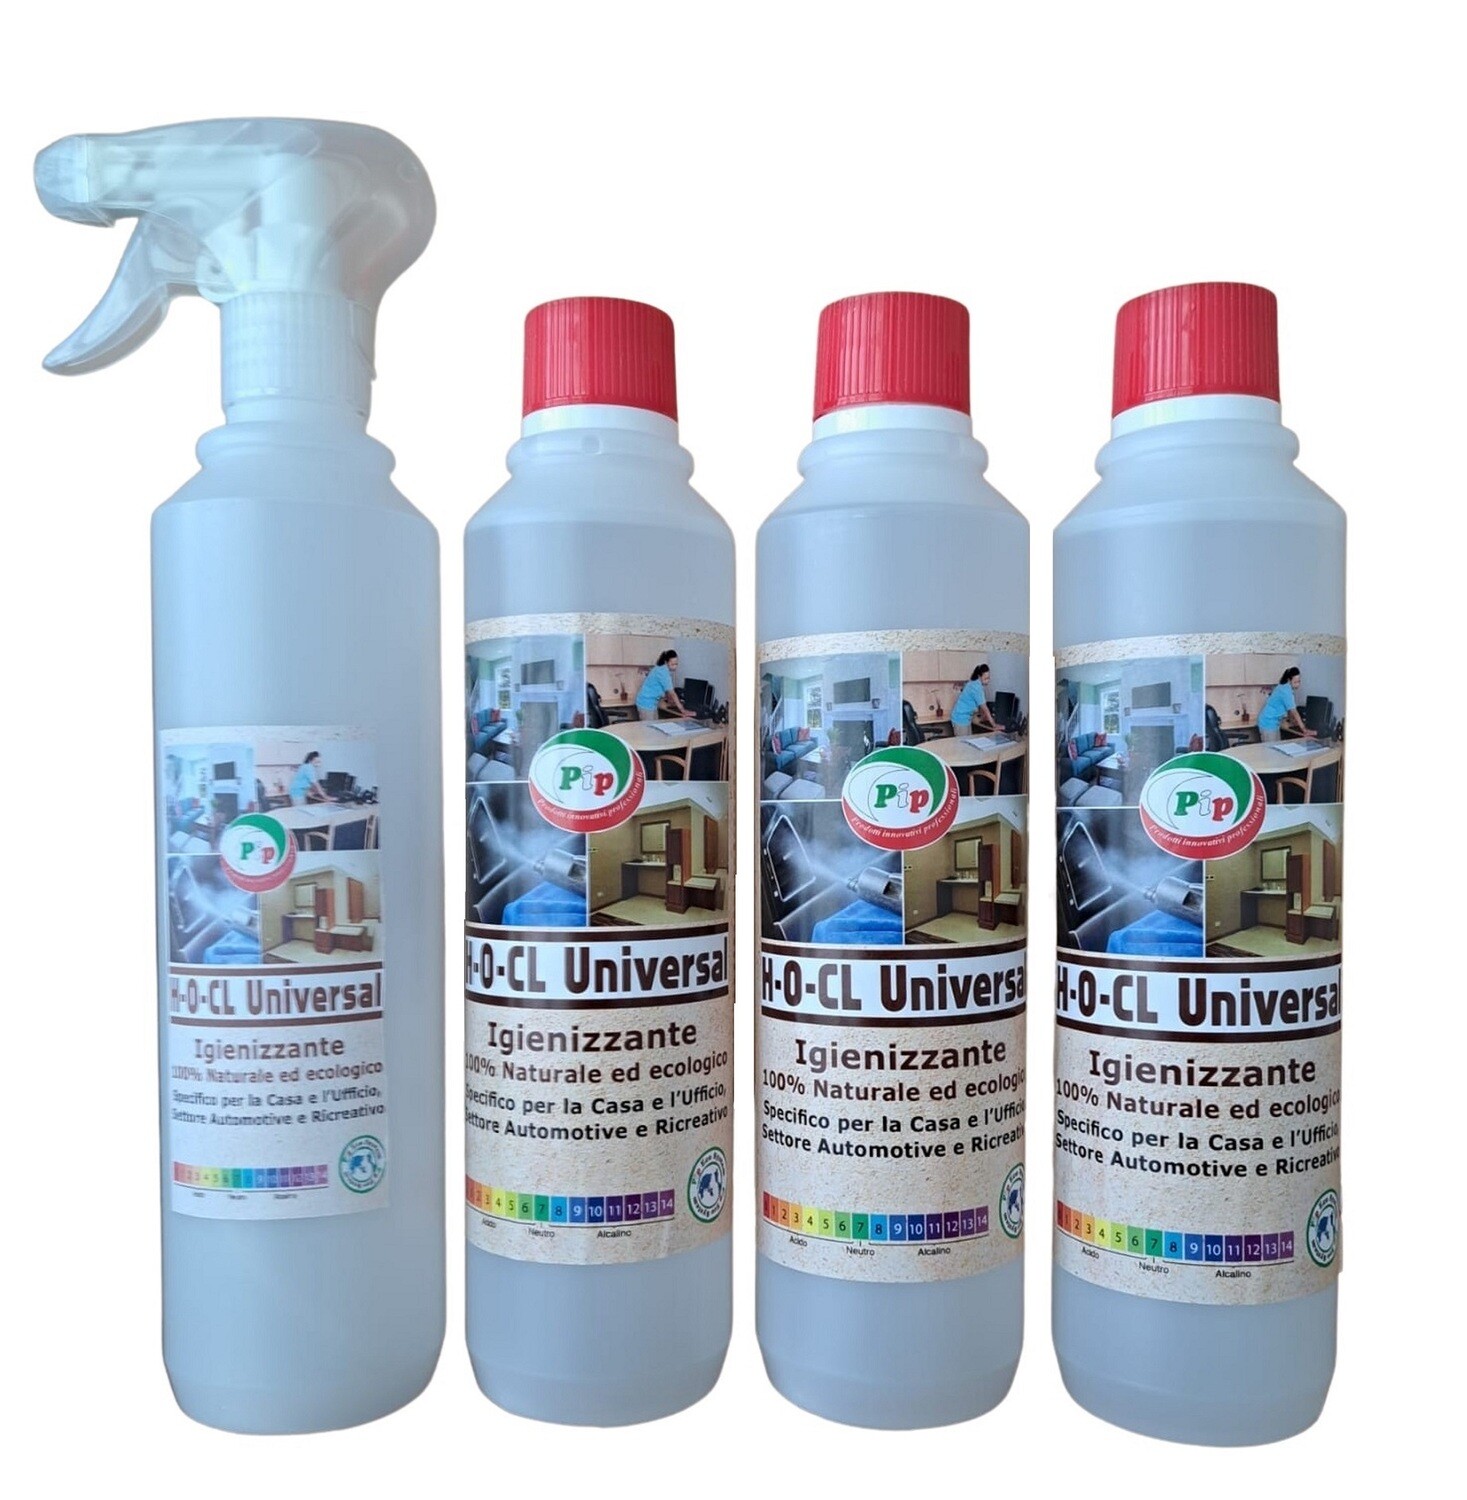 PIP Detergente Igienizzante 100% Naturale ed Ecologico Superconcetrato H-O-CL Universal, Kit 3FL.da ml.500 + Vapo, Specifico per la Casa, Ufficio, settore Automotive e Ricreativo